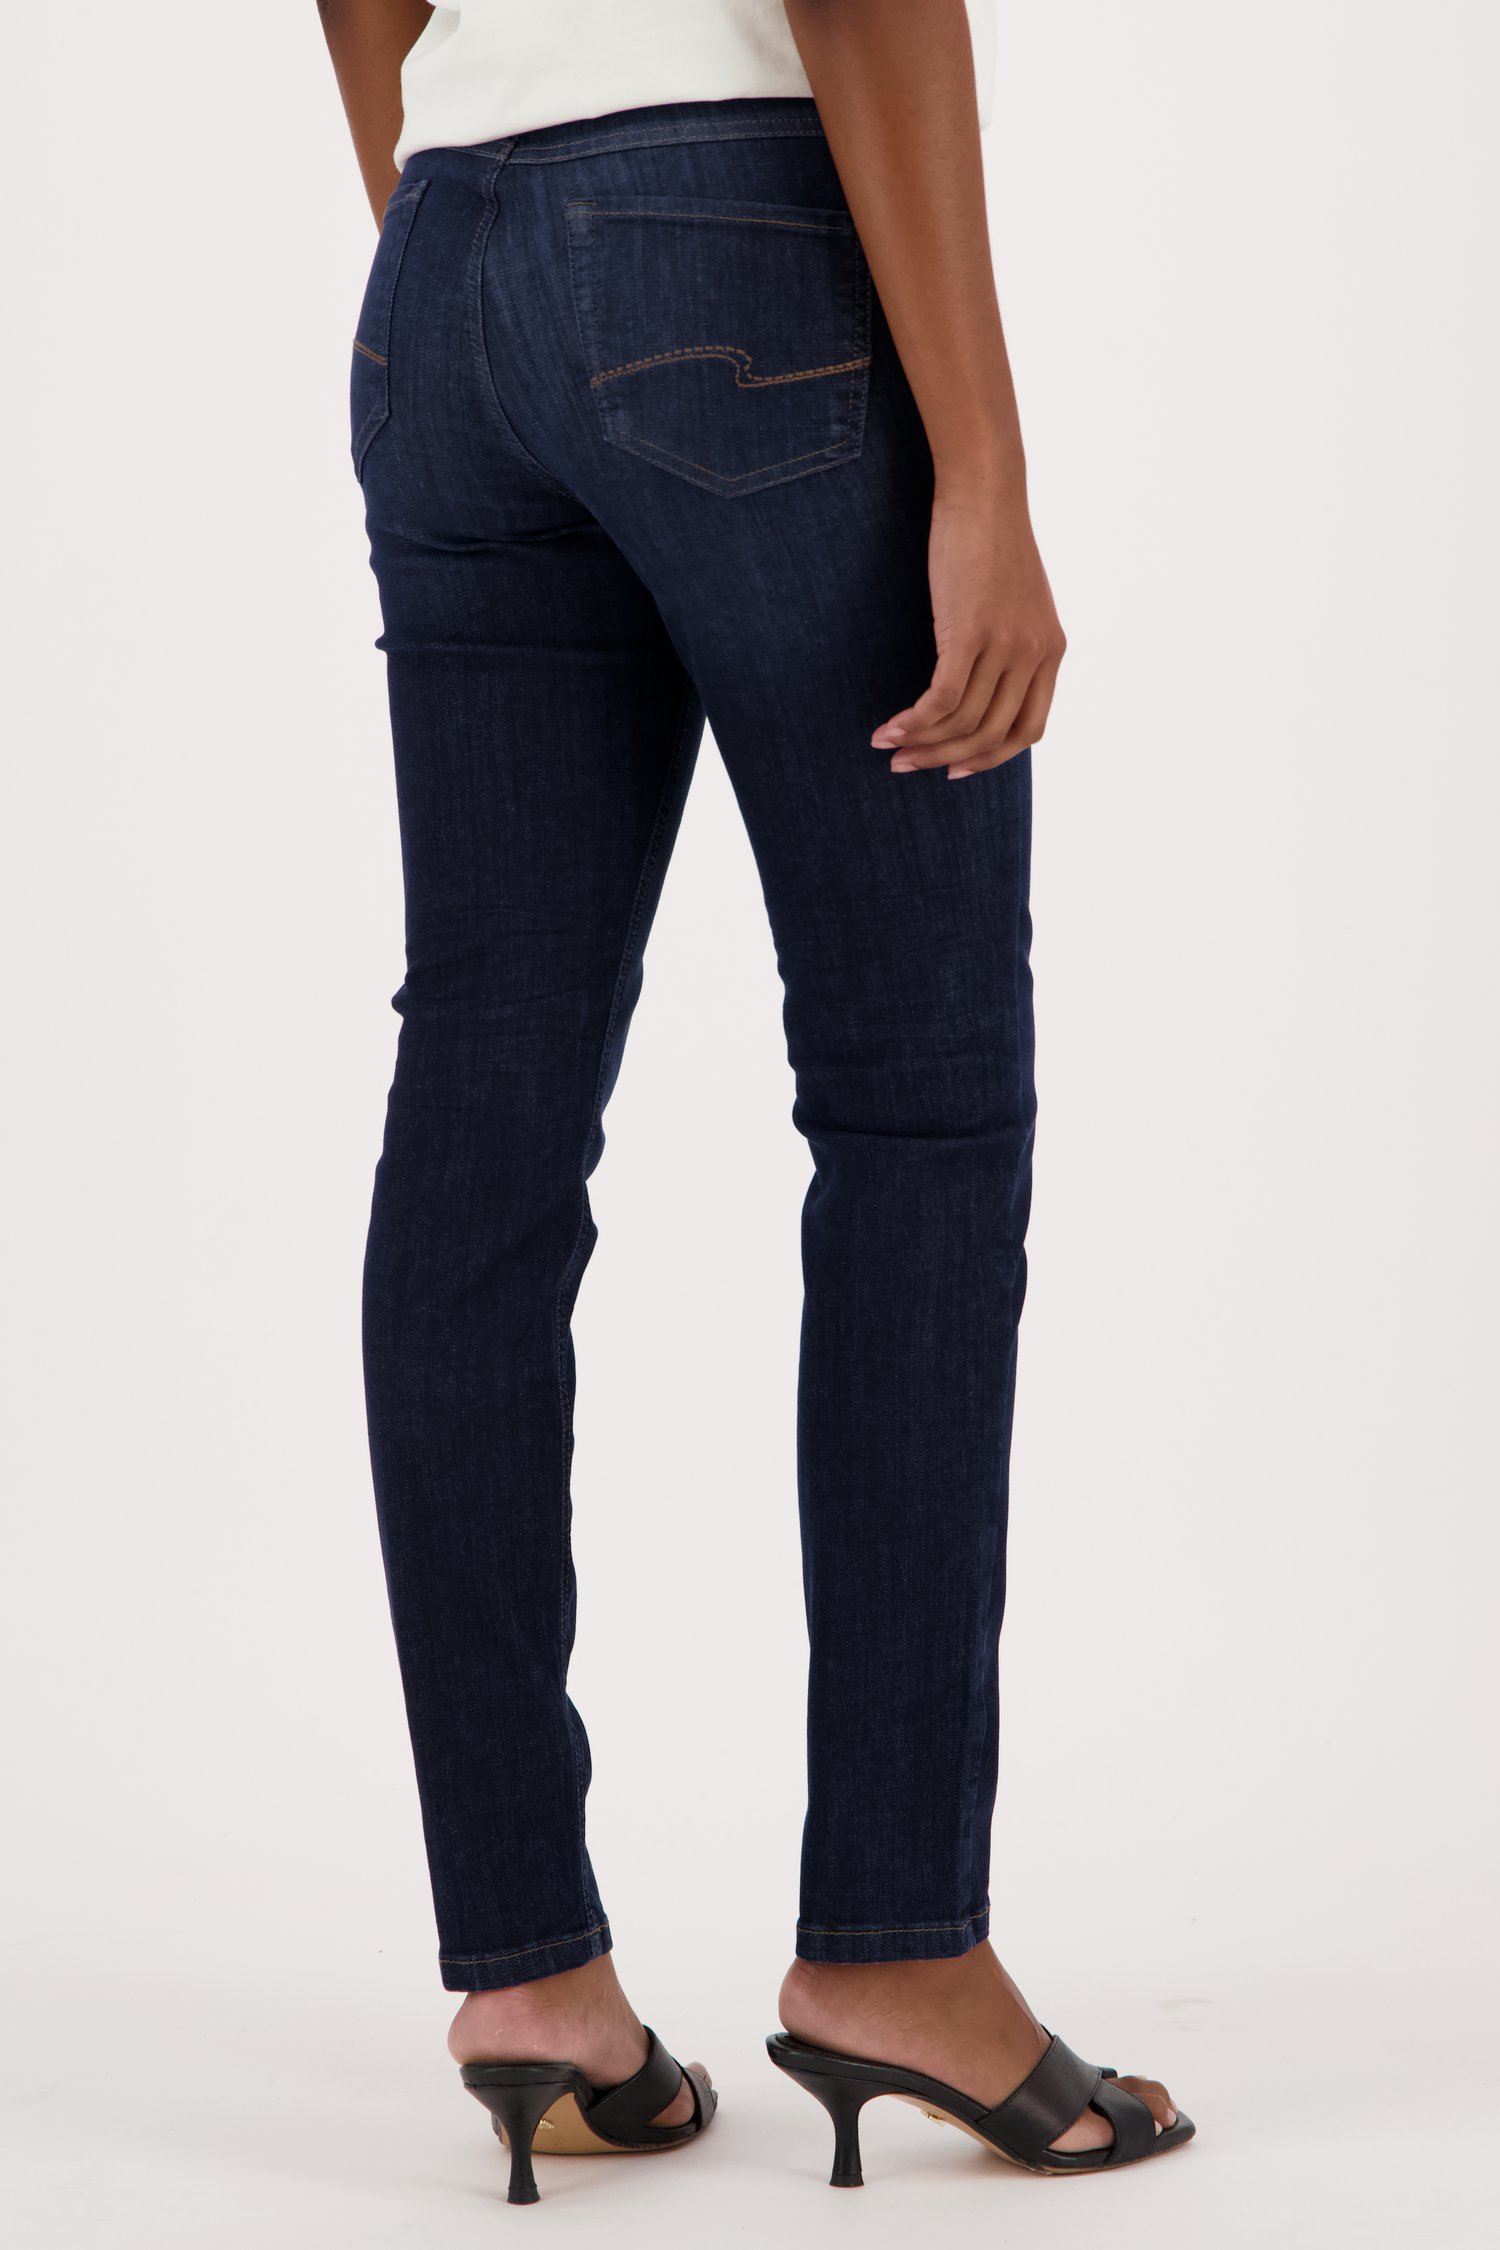 Donkerblauwe jeans - skinny fit van Angels voor Dames